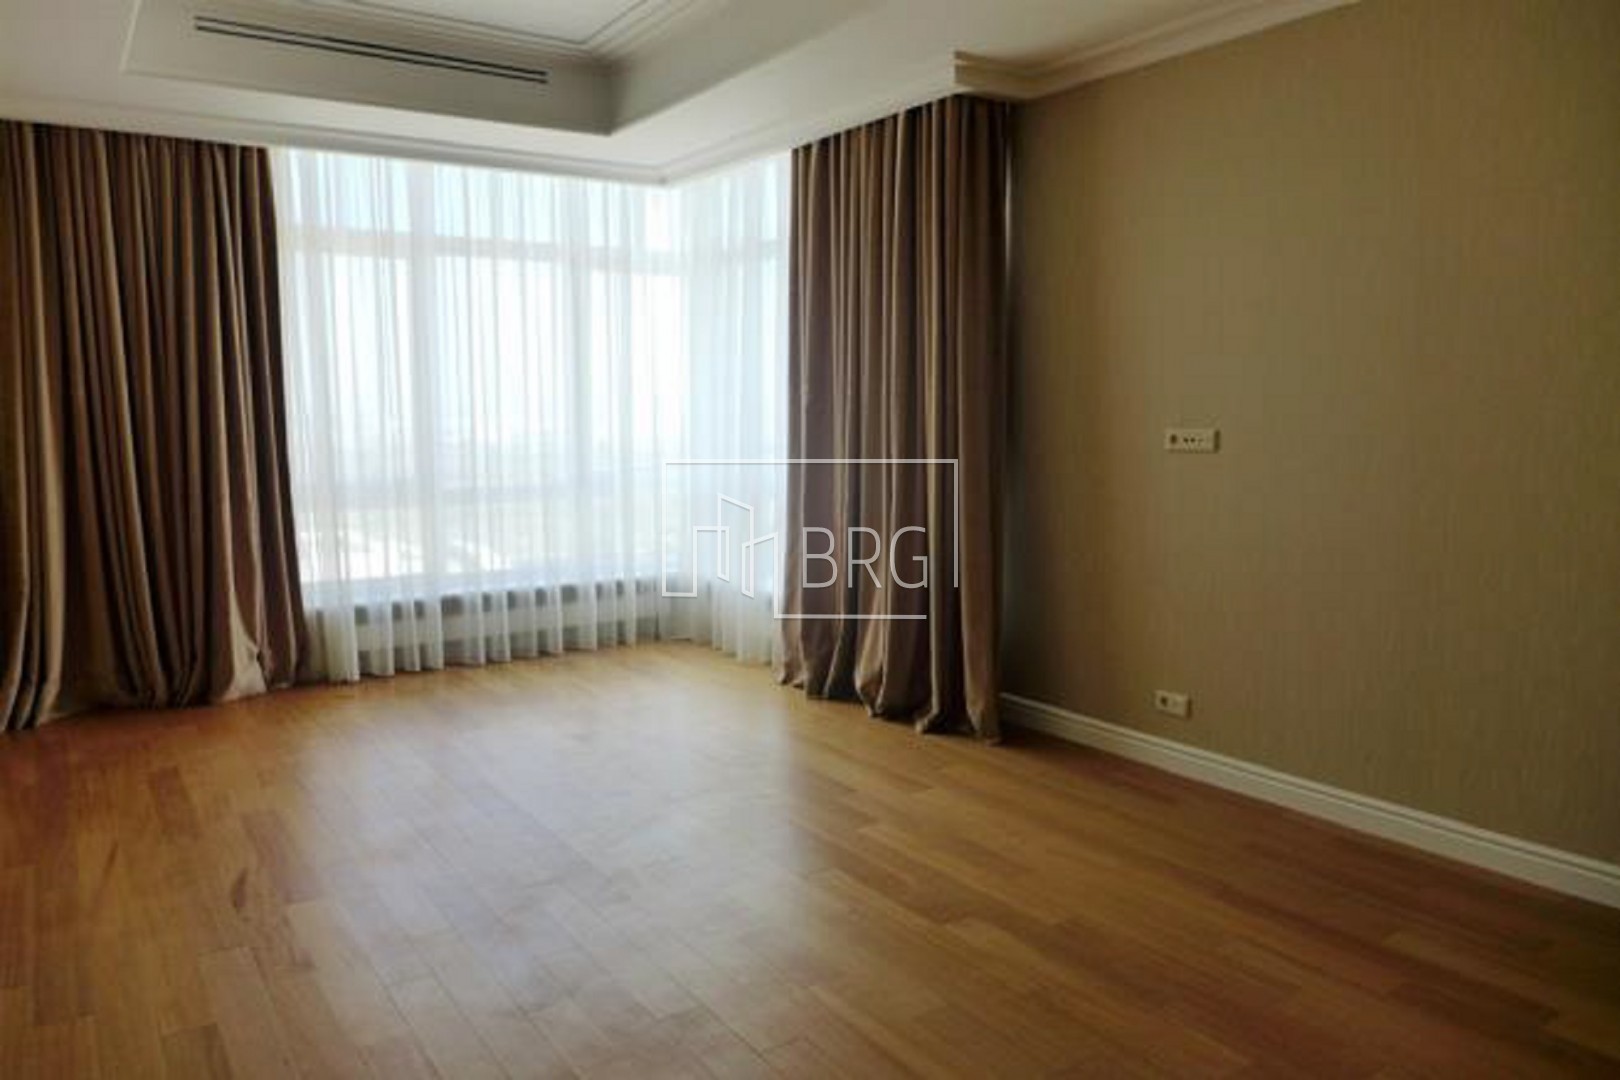 Продажа 4-х комнатной квартиры 264м в элитном доме премиум класса. Kiev